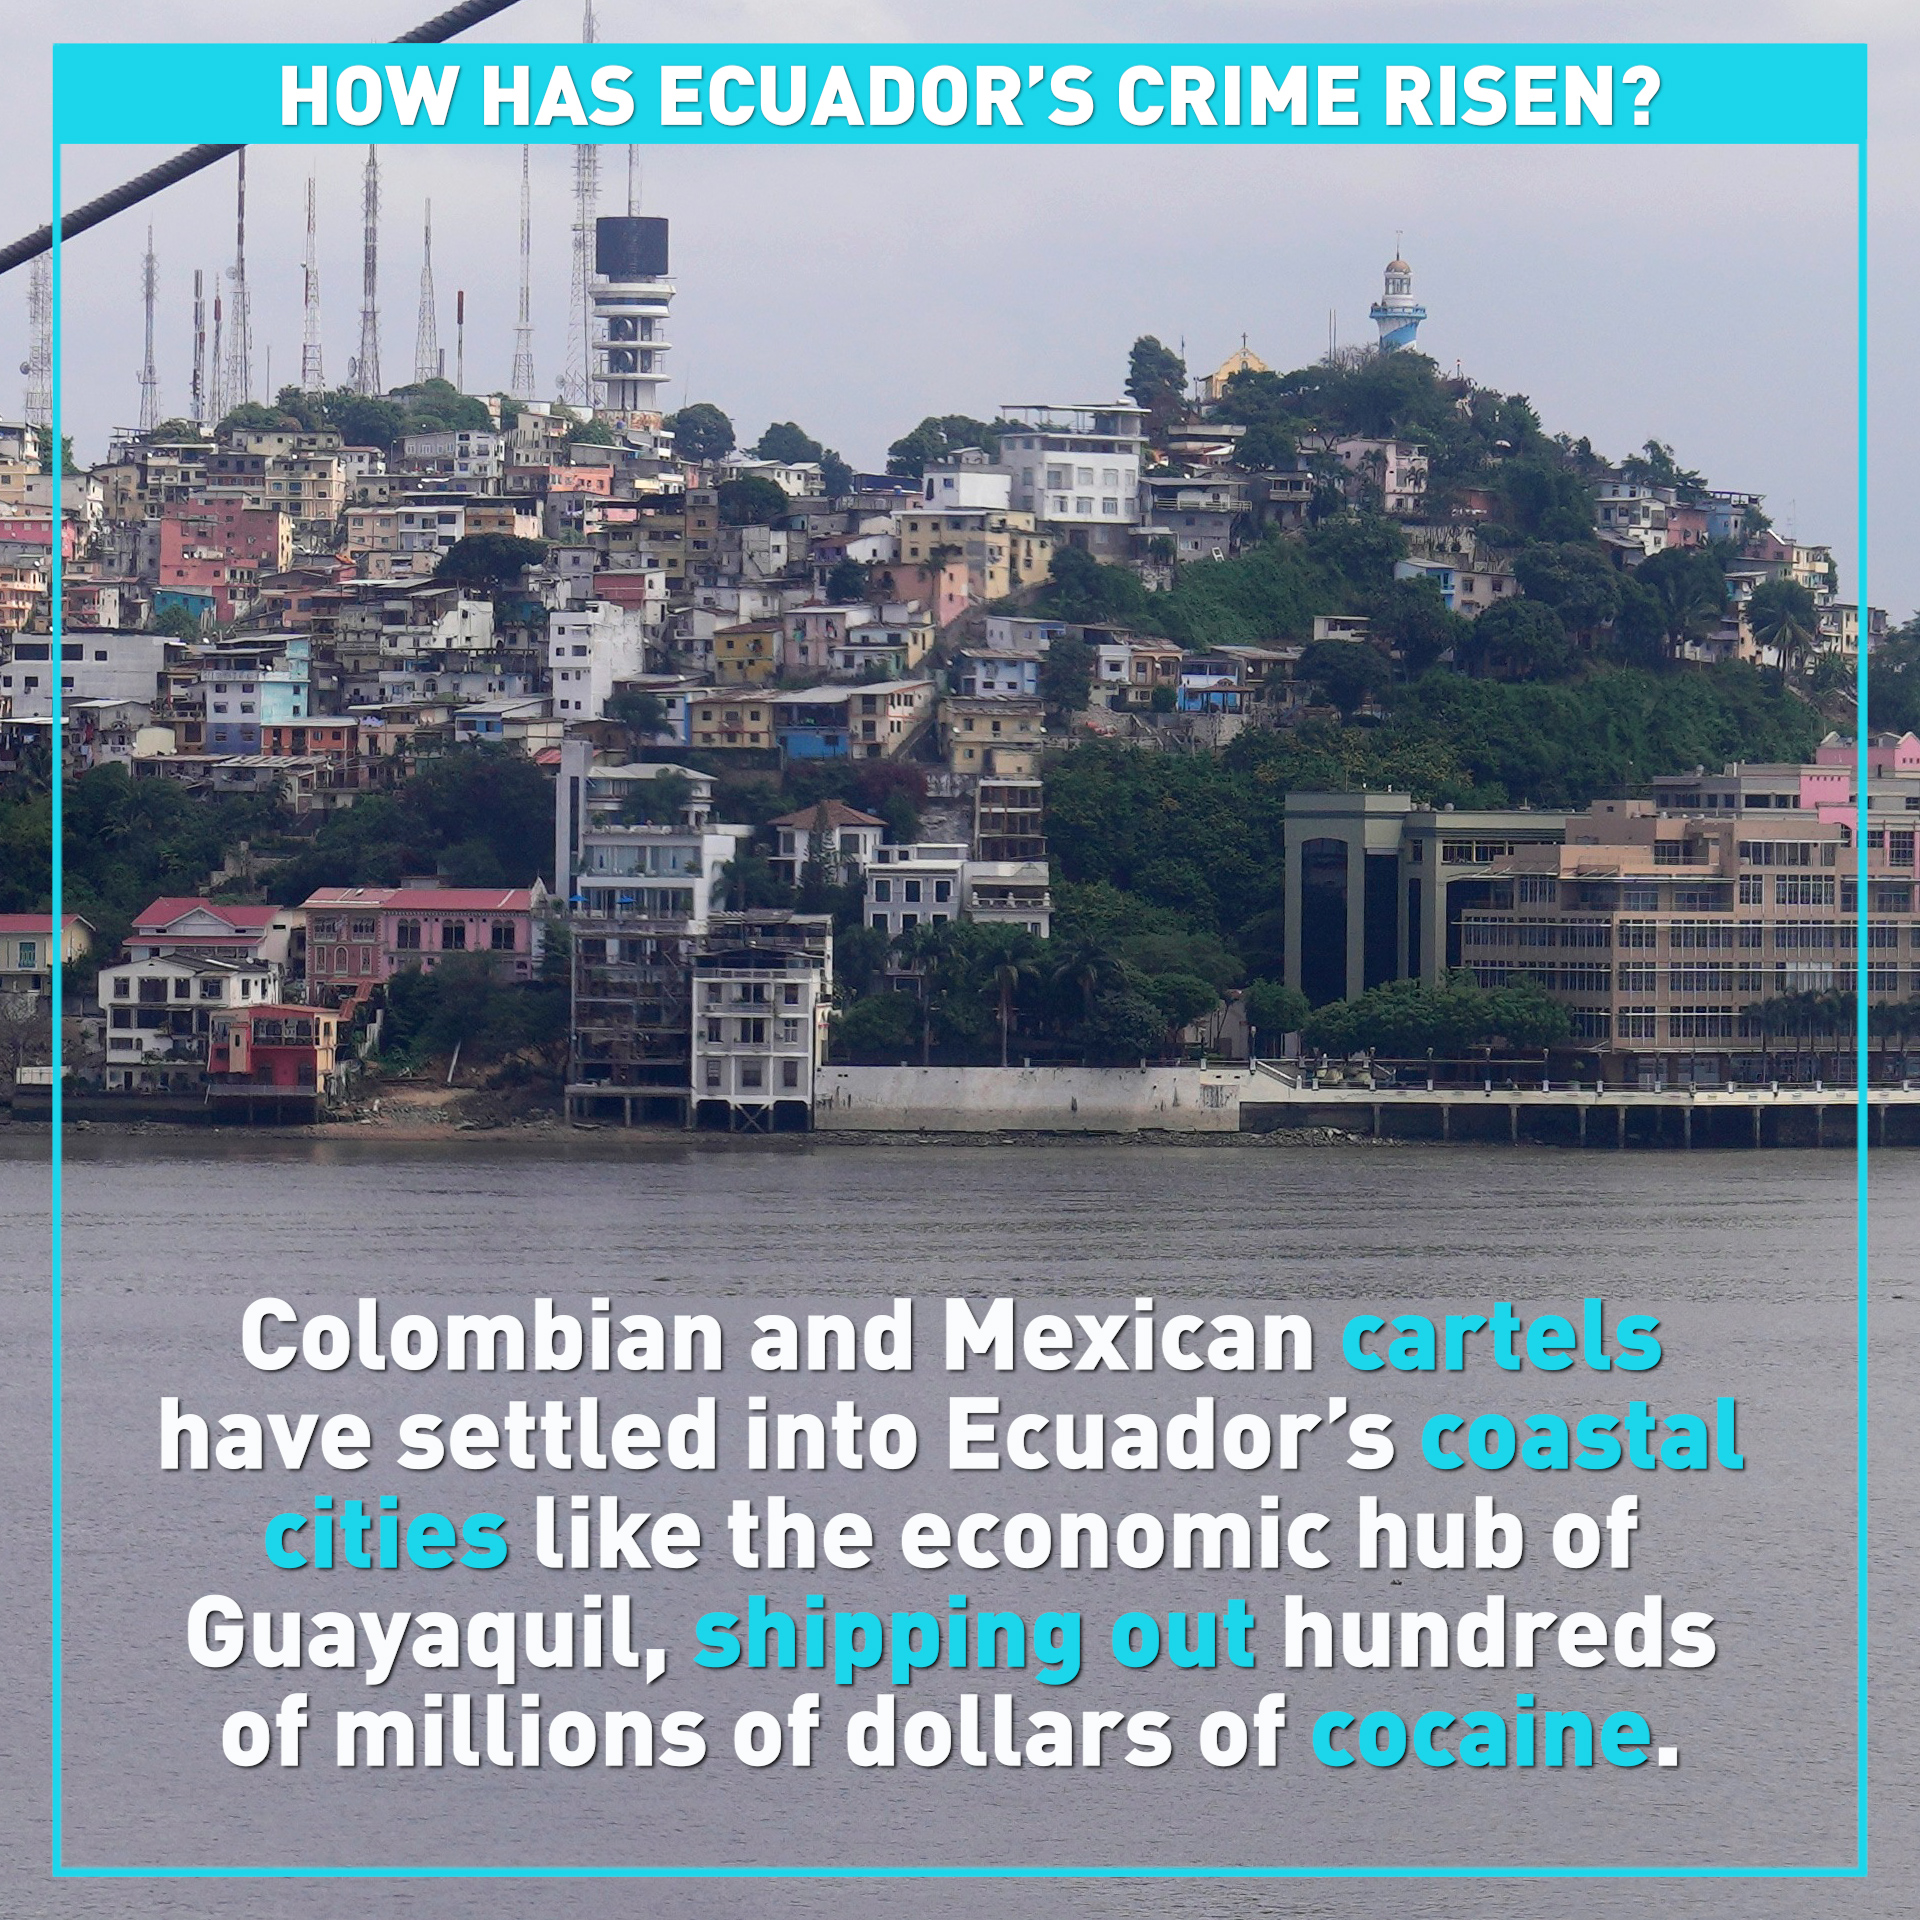 How has Ecuador's crime risen? 